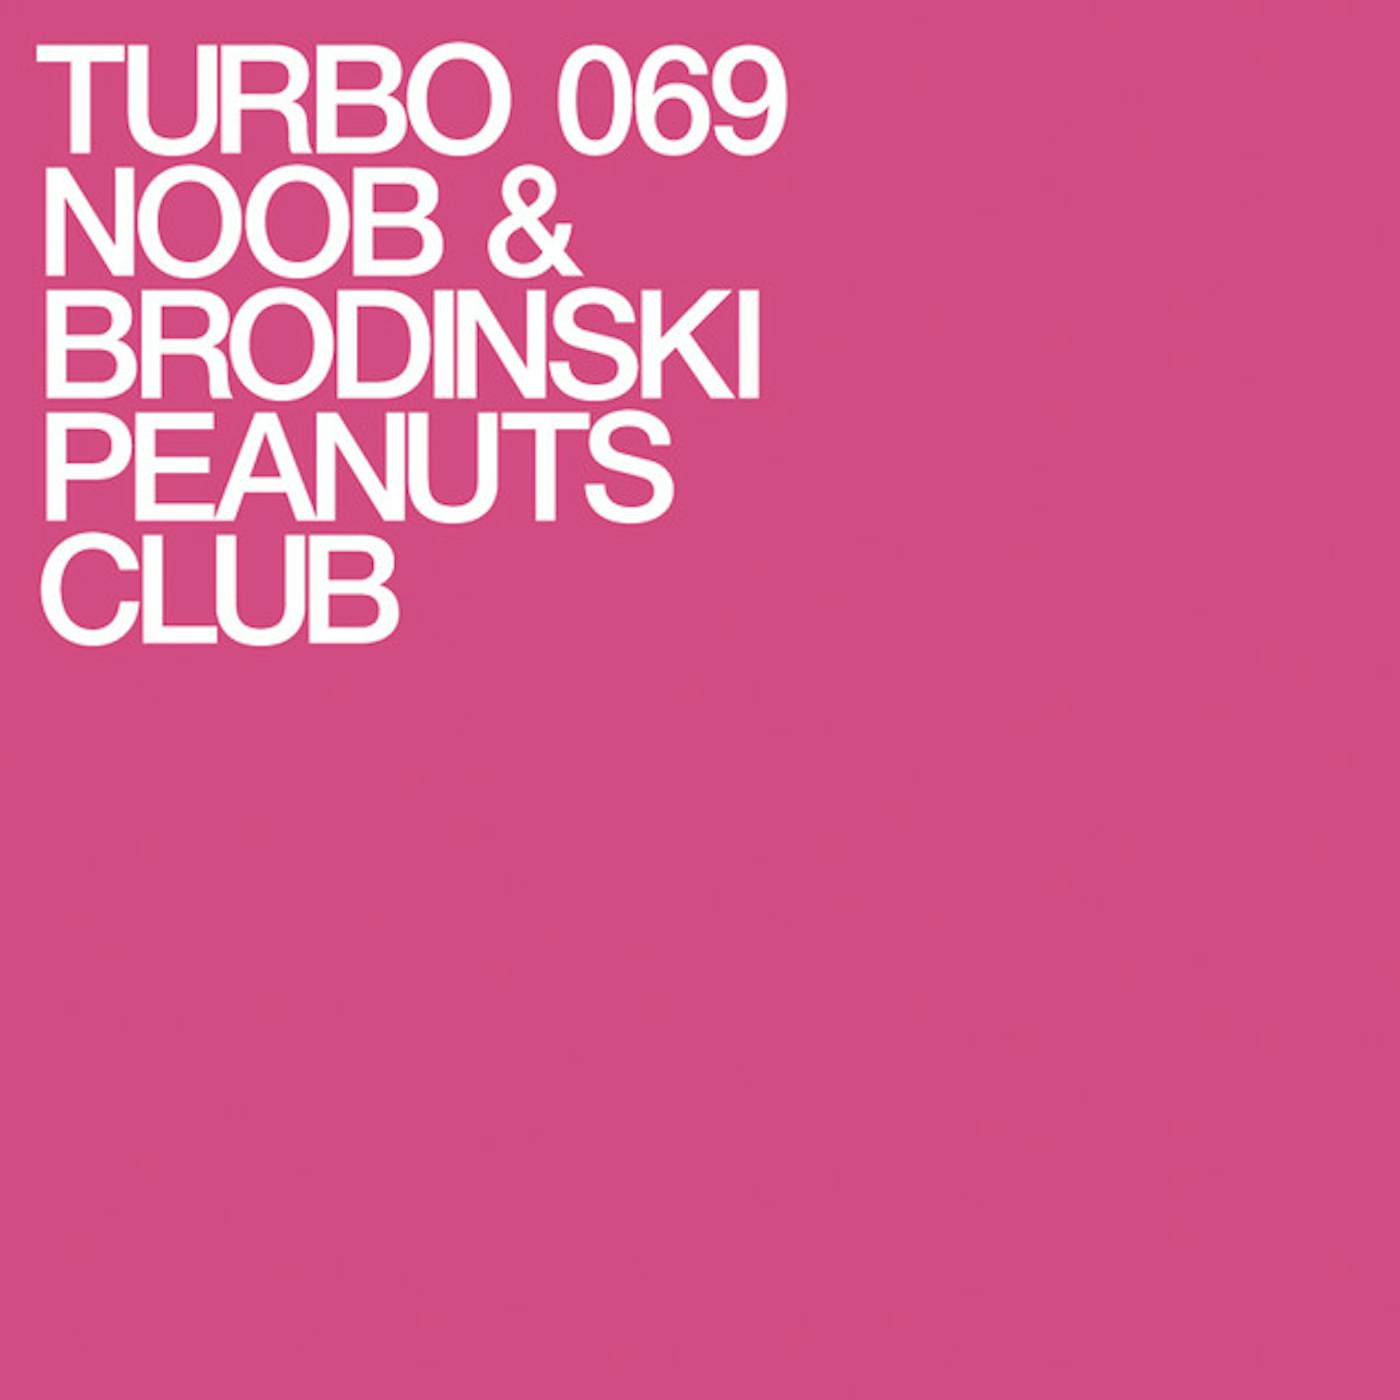 Noob & Brodinski Peanuts Club Vinyl Record